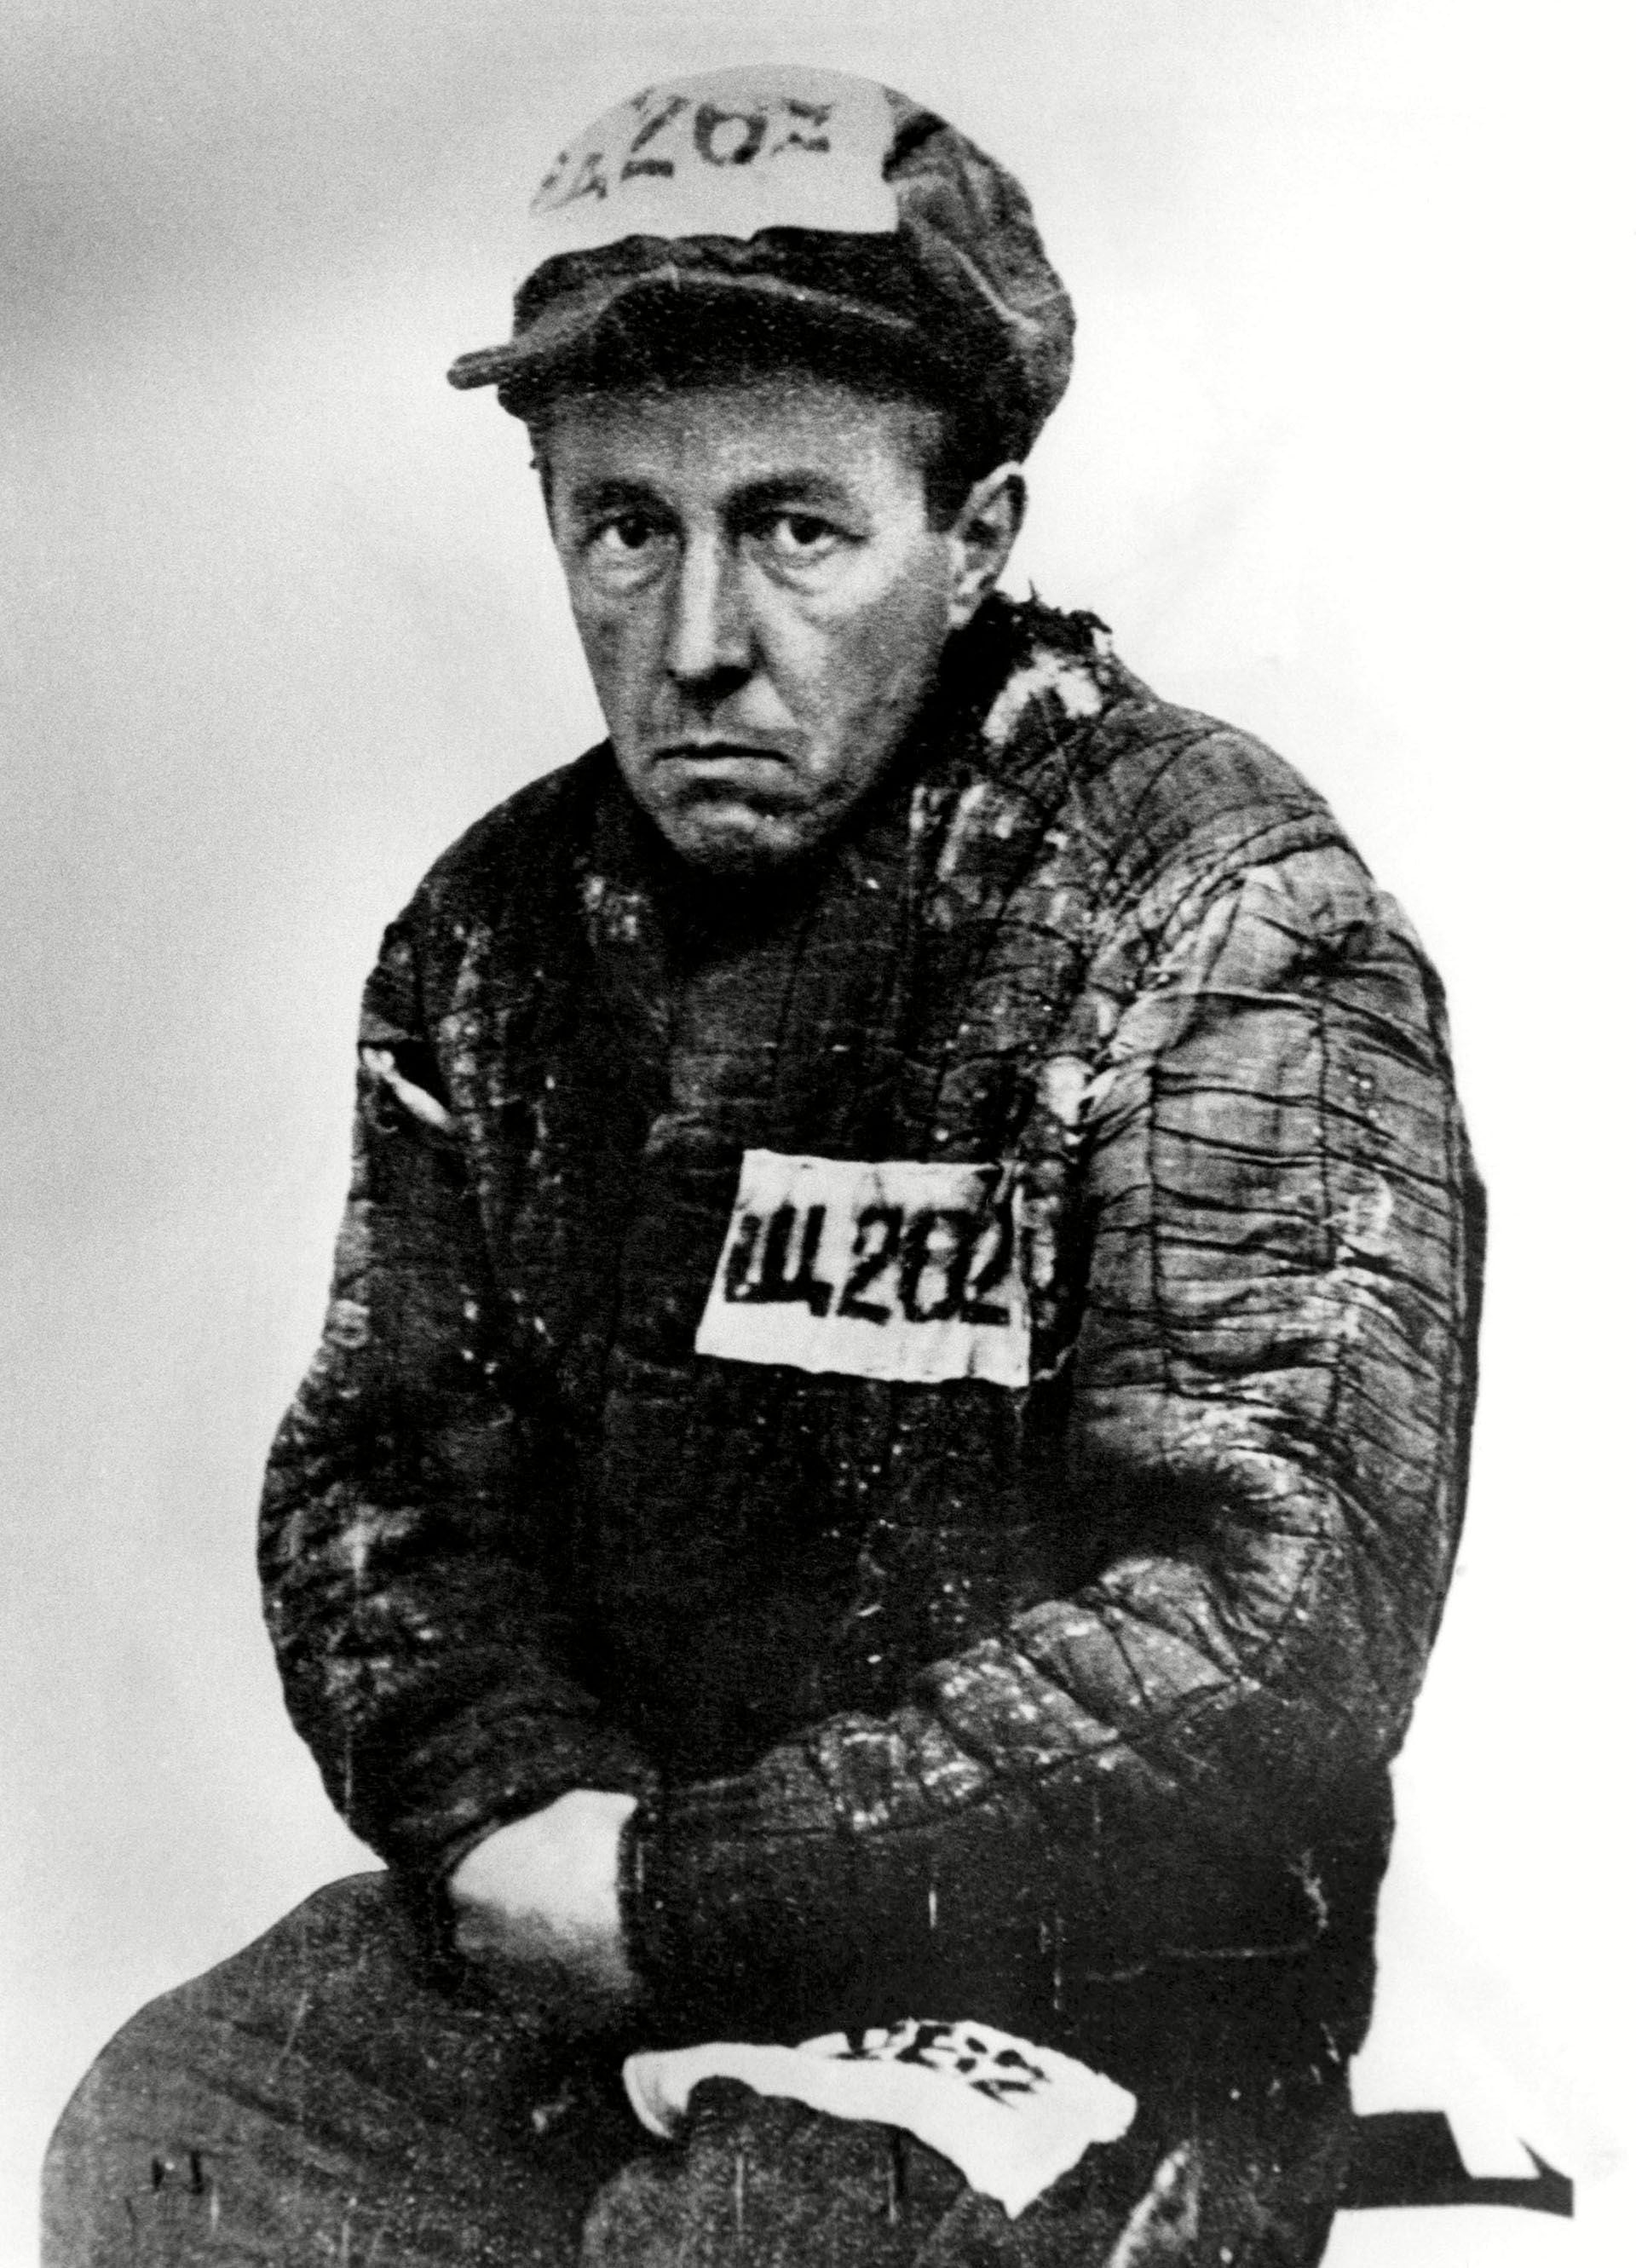 El Premio Nobel, Alexandr Solzhenitsyn durante sus años en el campo de concentración entre 1945 y 1950 (Shutterstock)